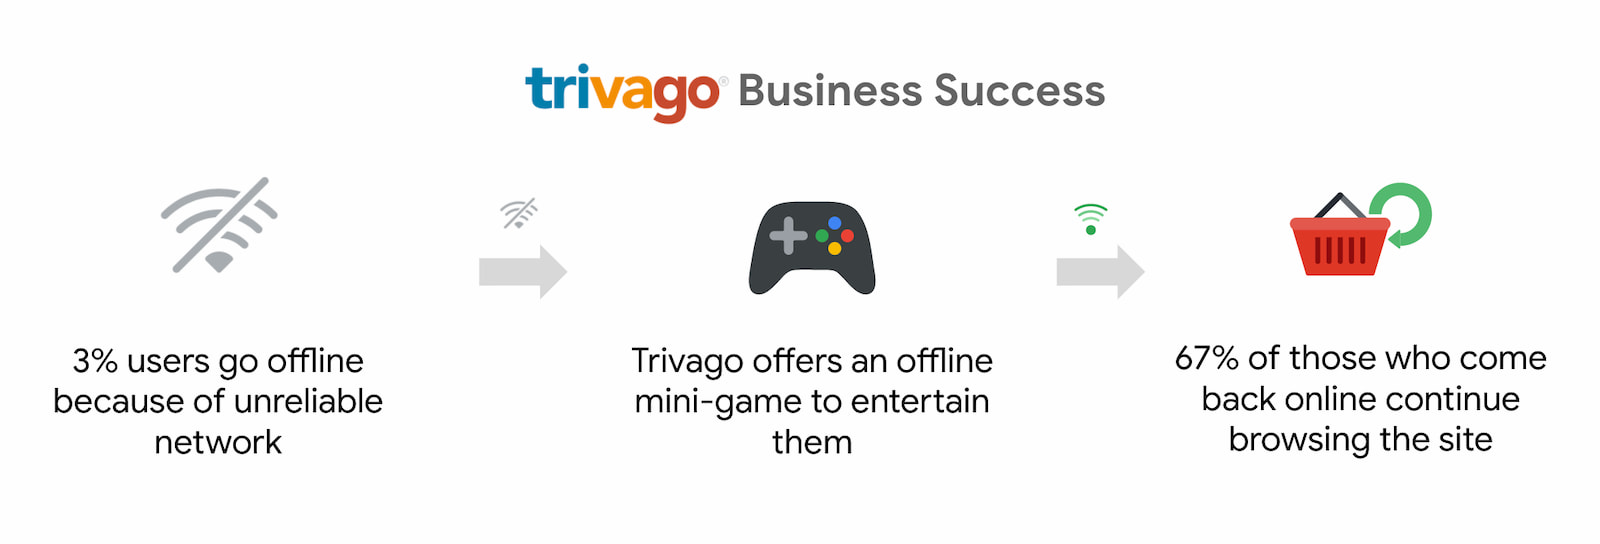 Trivago는 인터넷에 다시 돌아와 탐색을 계속하는 사용자가 67% 증가했습니다.